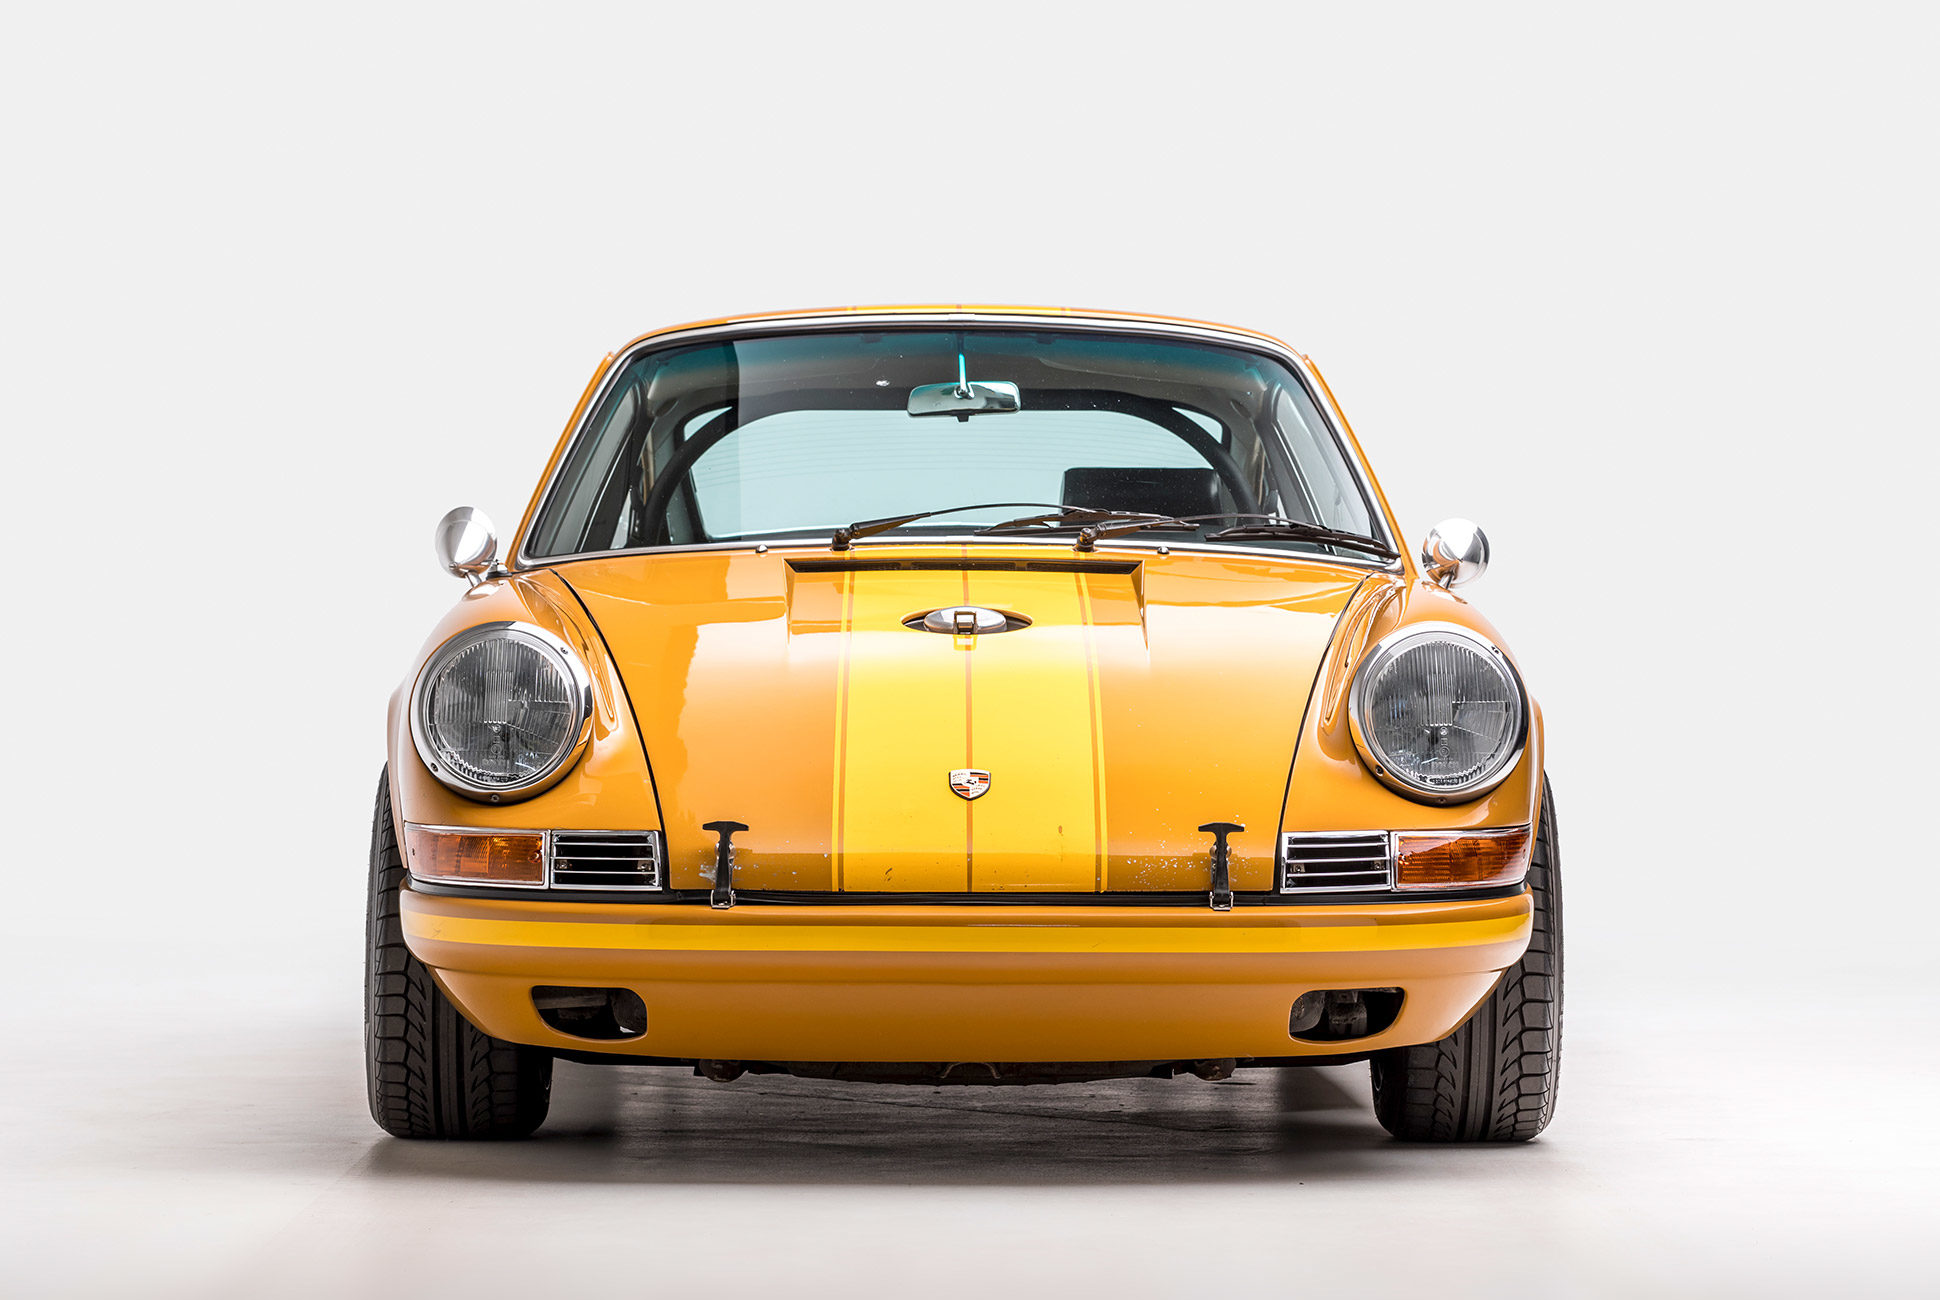 Porsche-Exhibit-Petersen-Museum-9-1940x1300.jpg